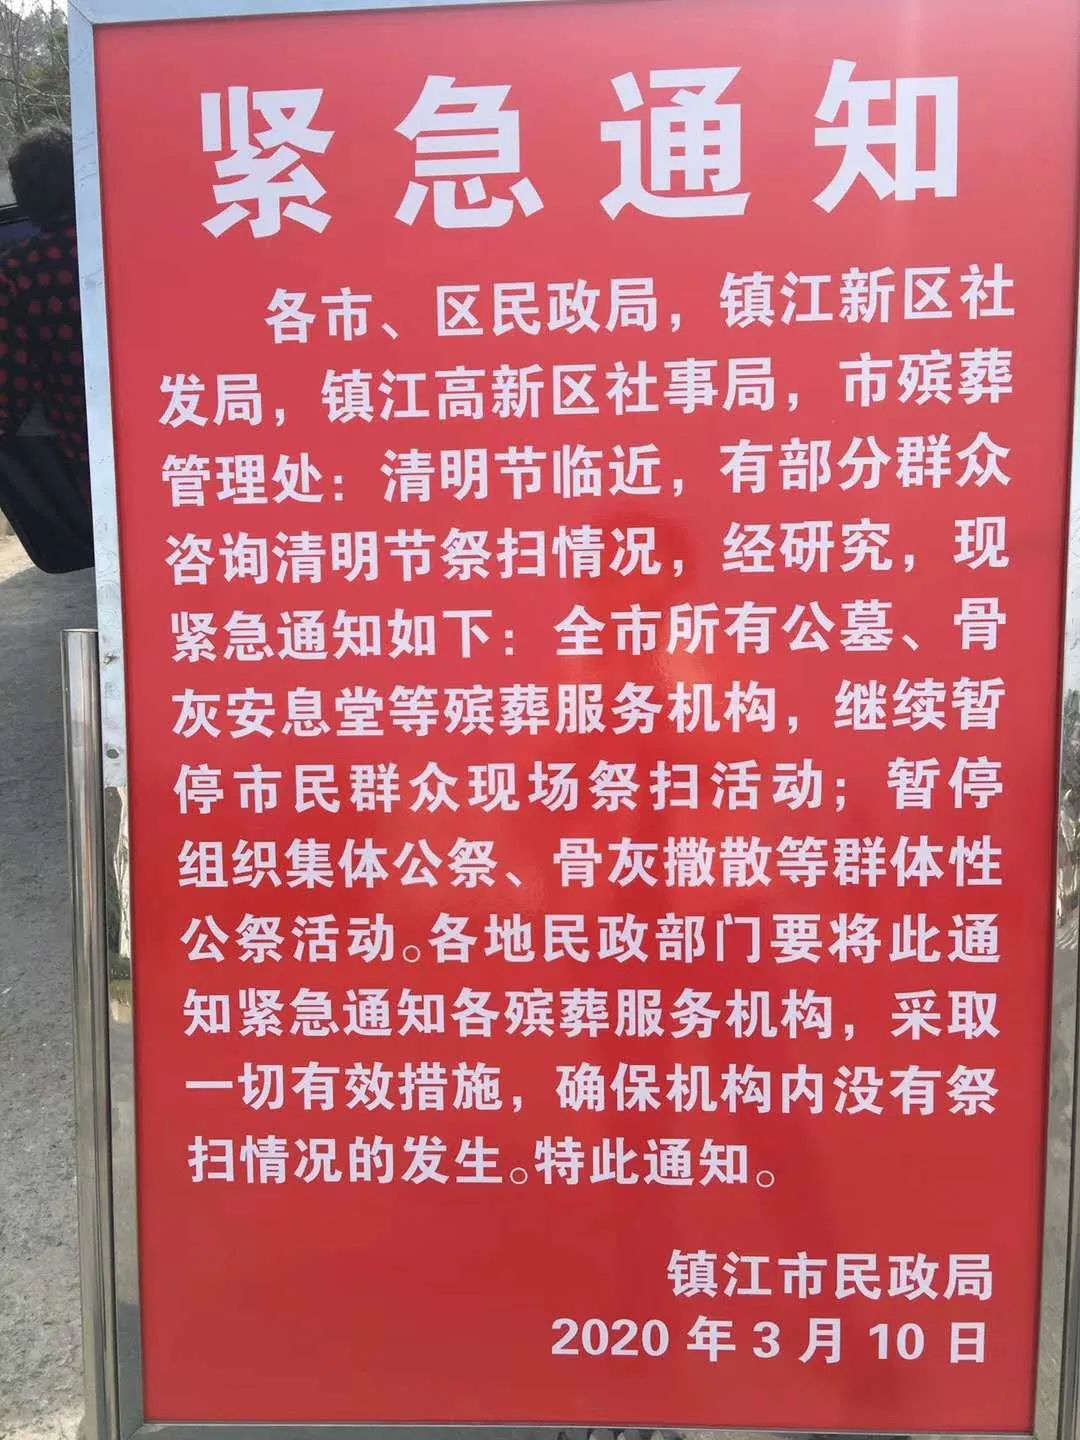 官宣关于镇江新区清明节扫墓的重要通知